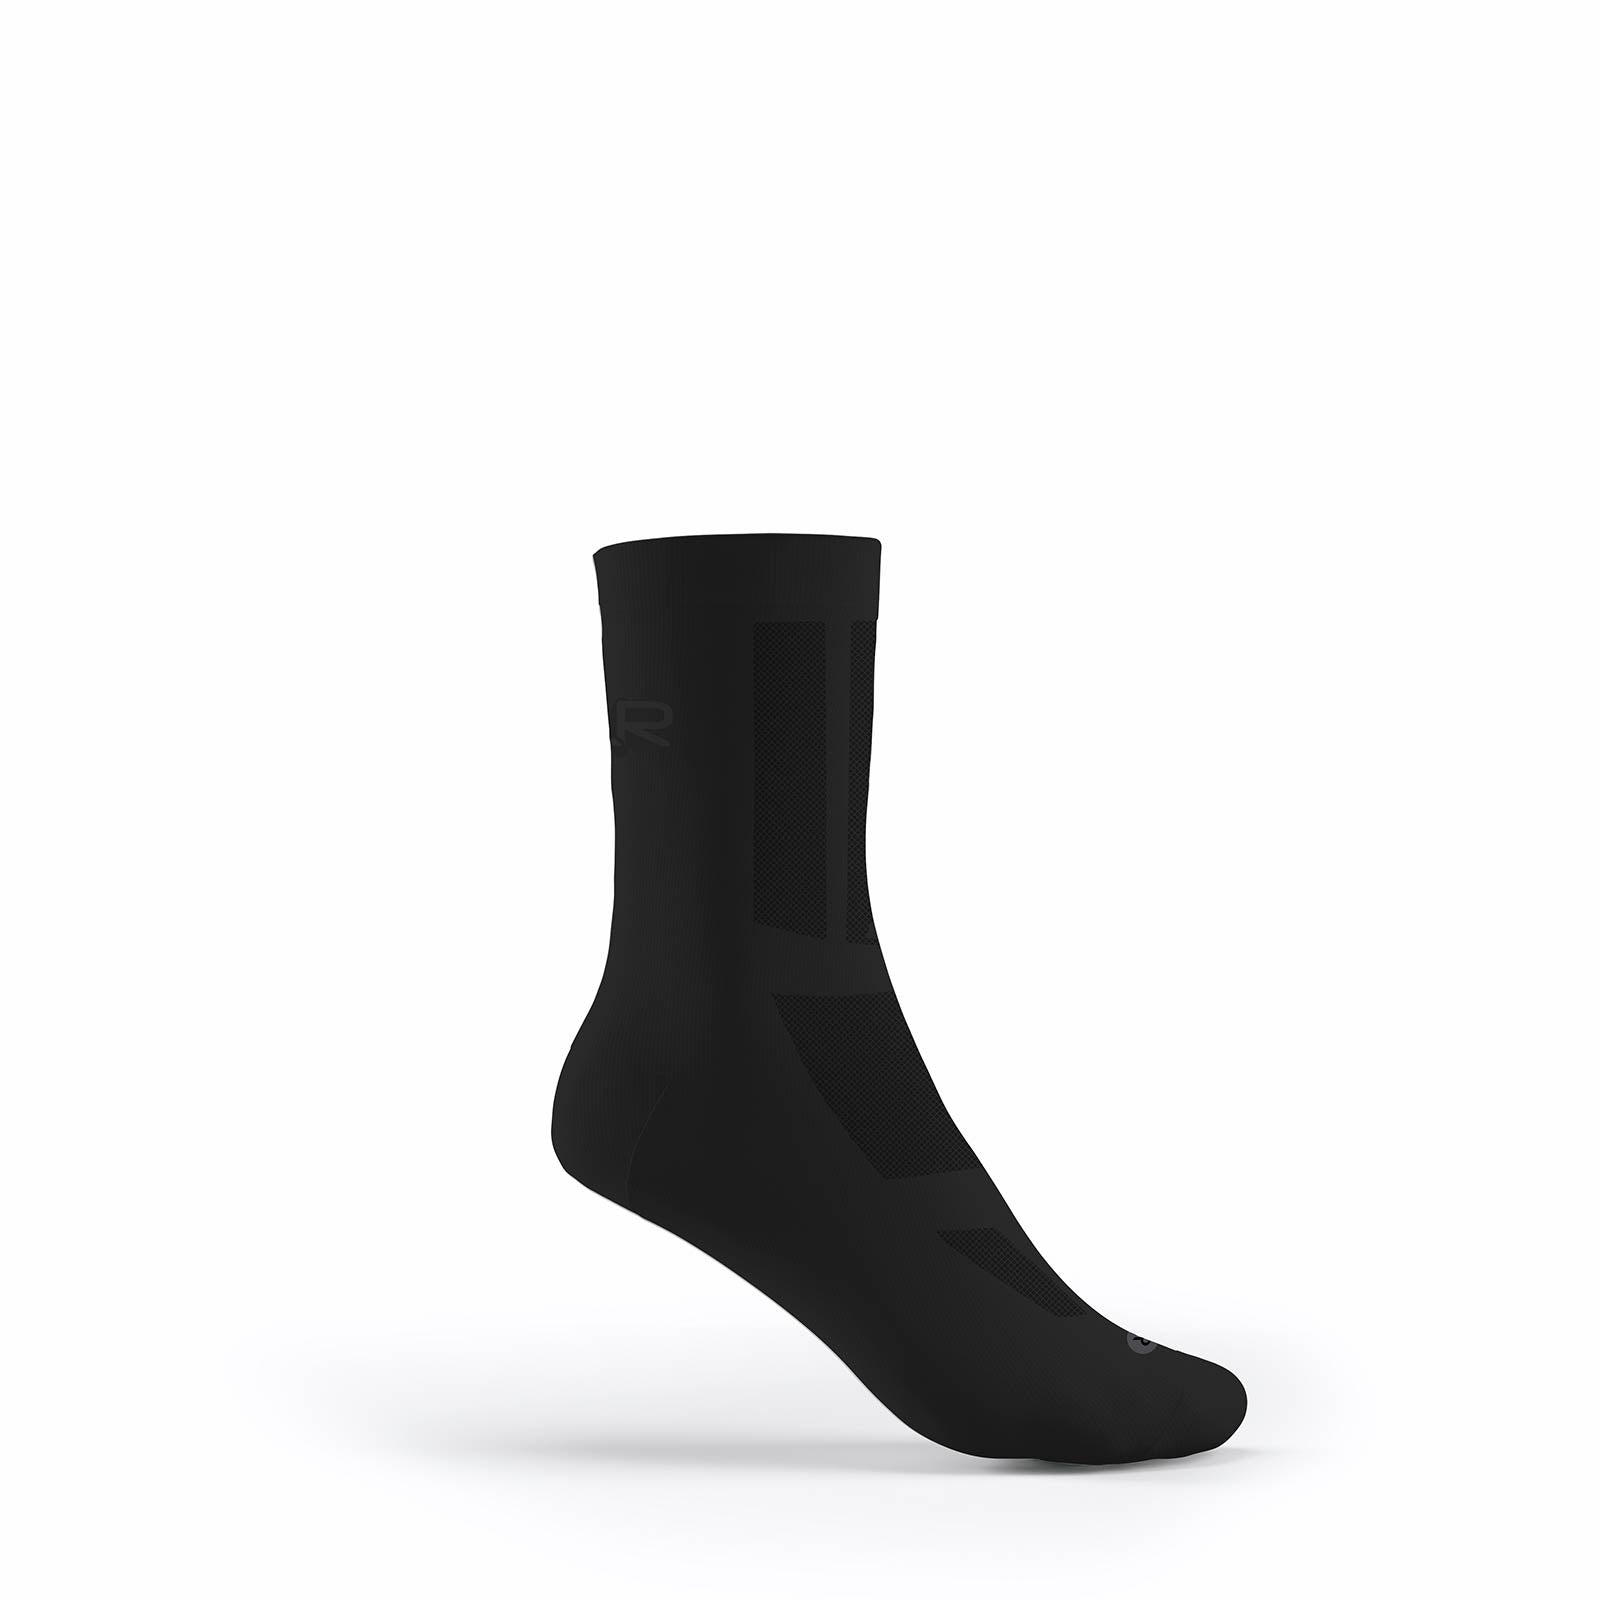 Flr Elite 14cm Cycling Socks Black - M 39-42